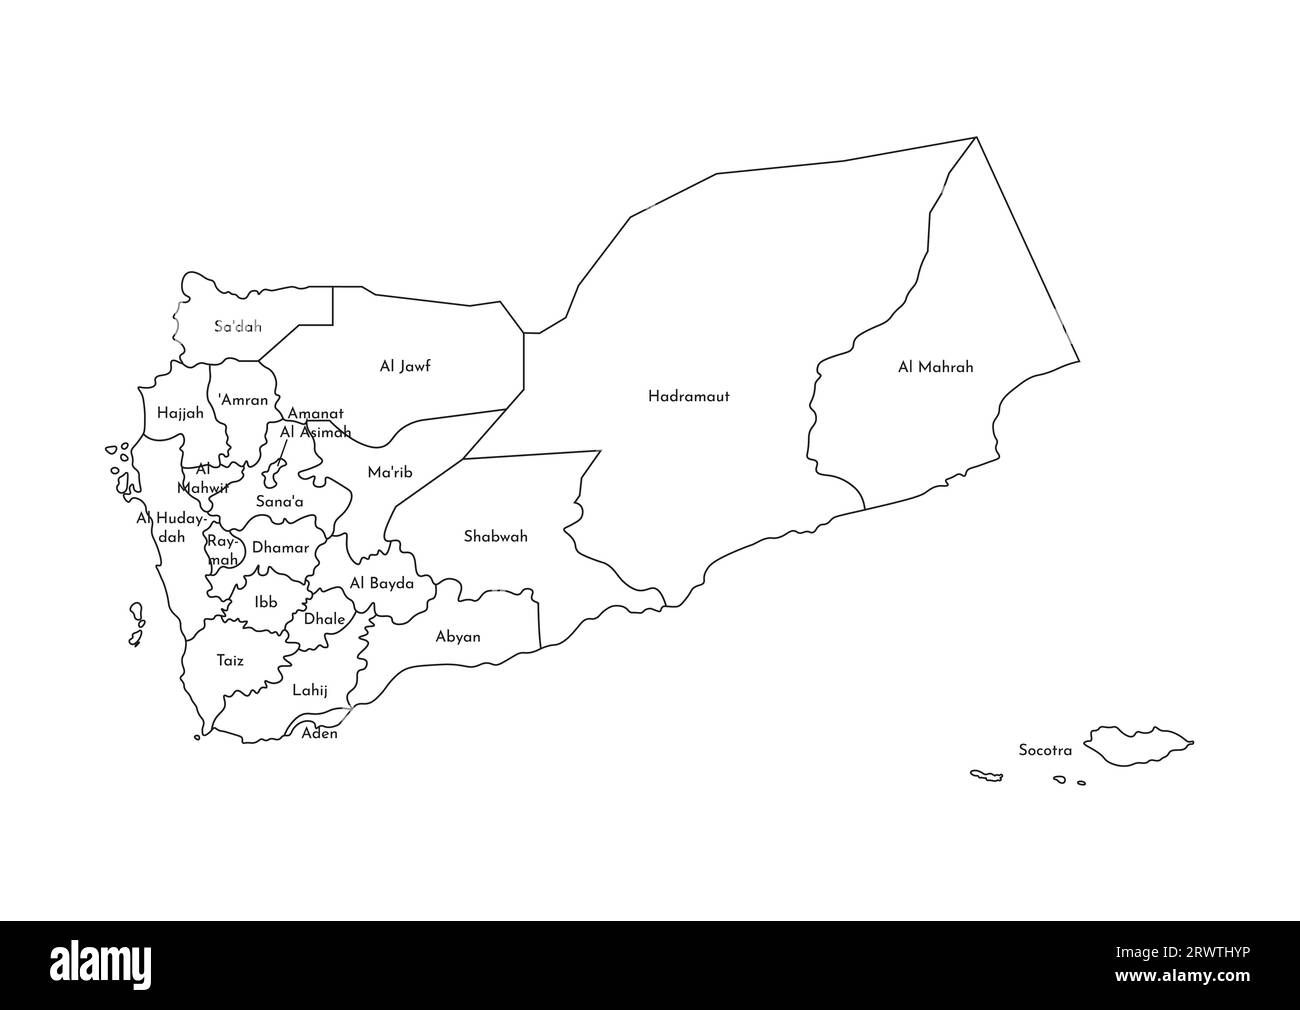 Vektorisolierte Darstellung einer vereinfachten Verwaltungskarte Jemens. Grenzen und Namen der Regionen (Gouvernements). Silhouetten mit schwarzen Linien. Stock Vektor